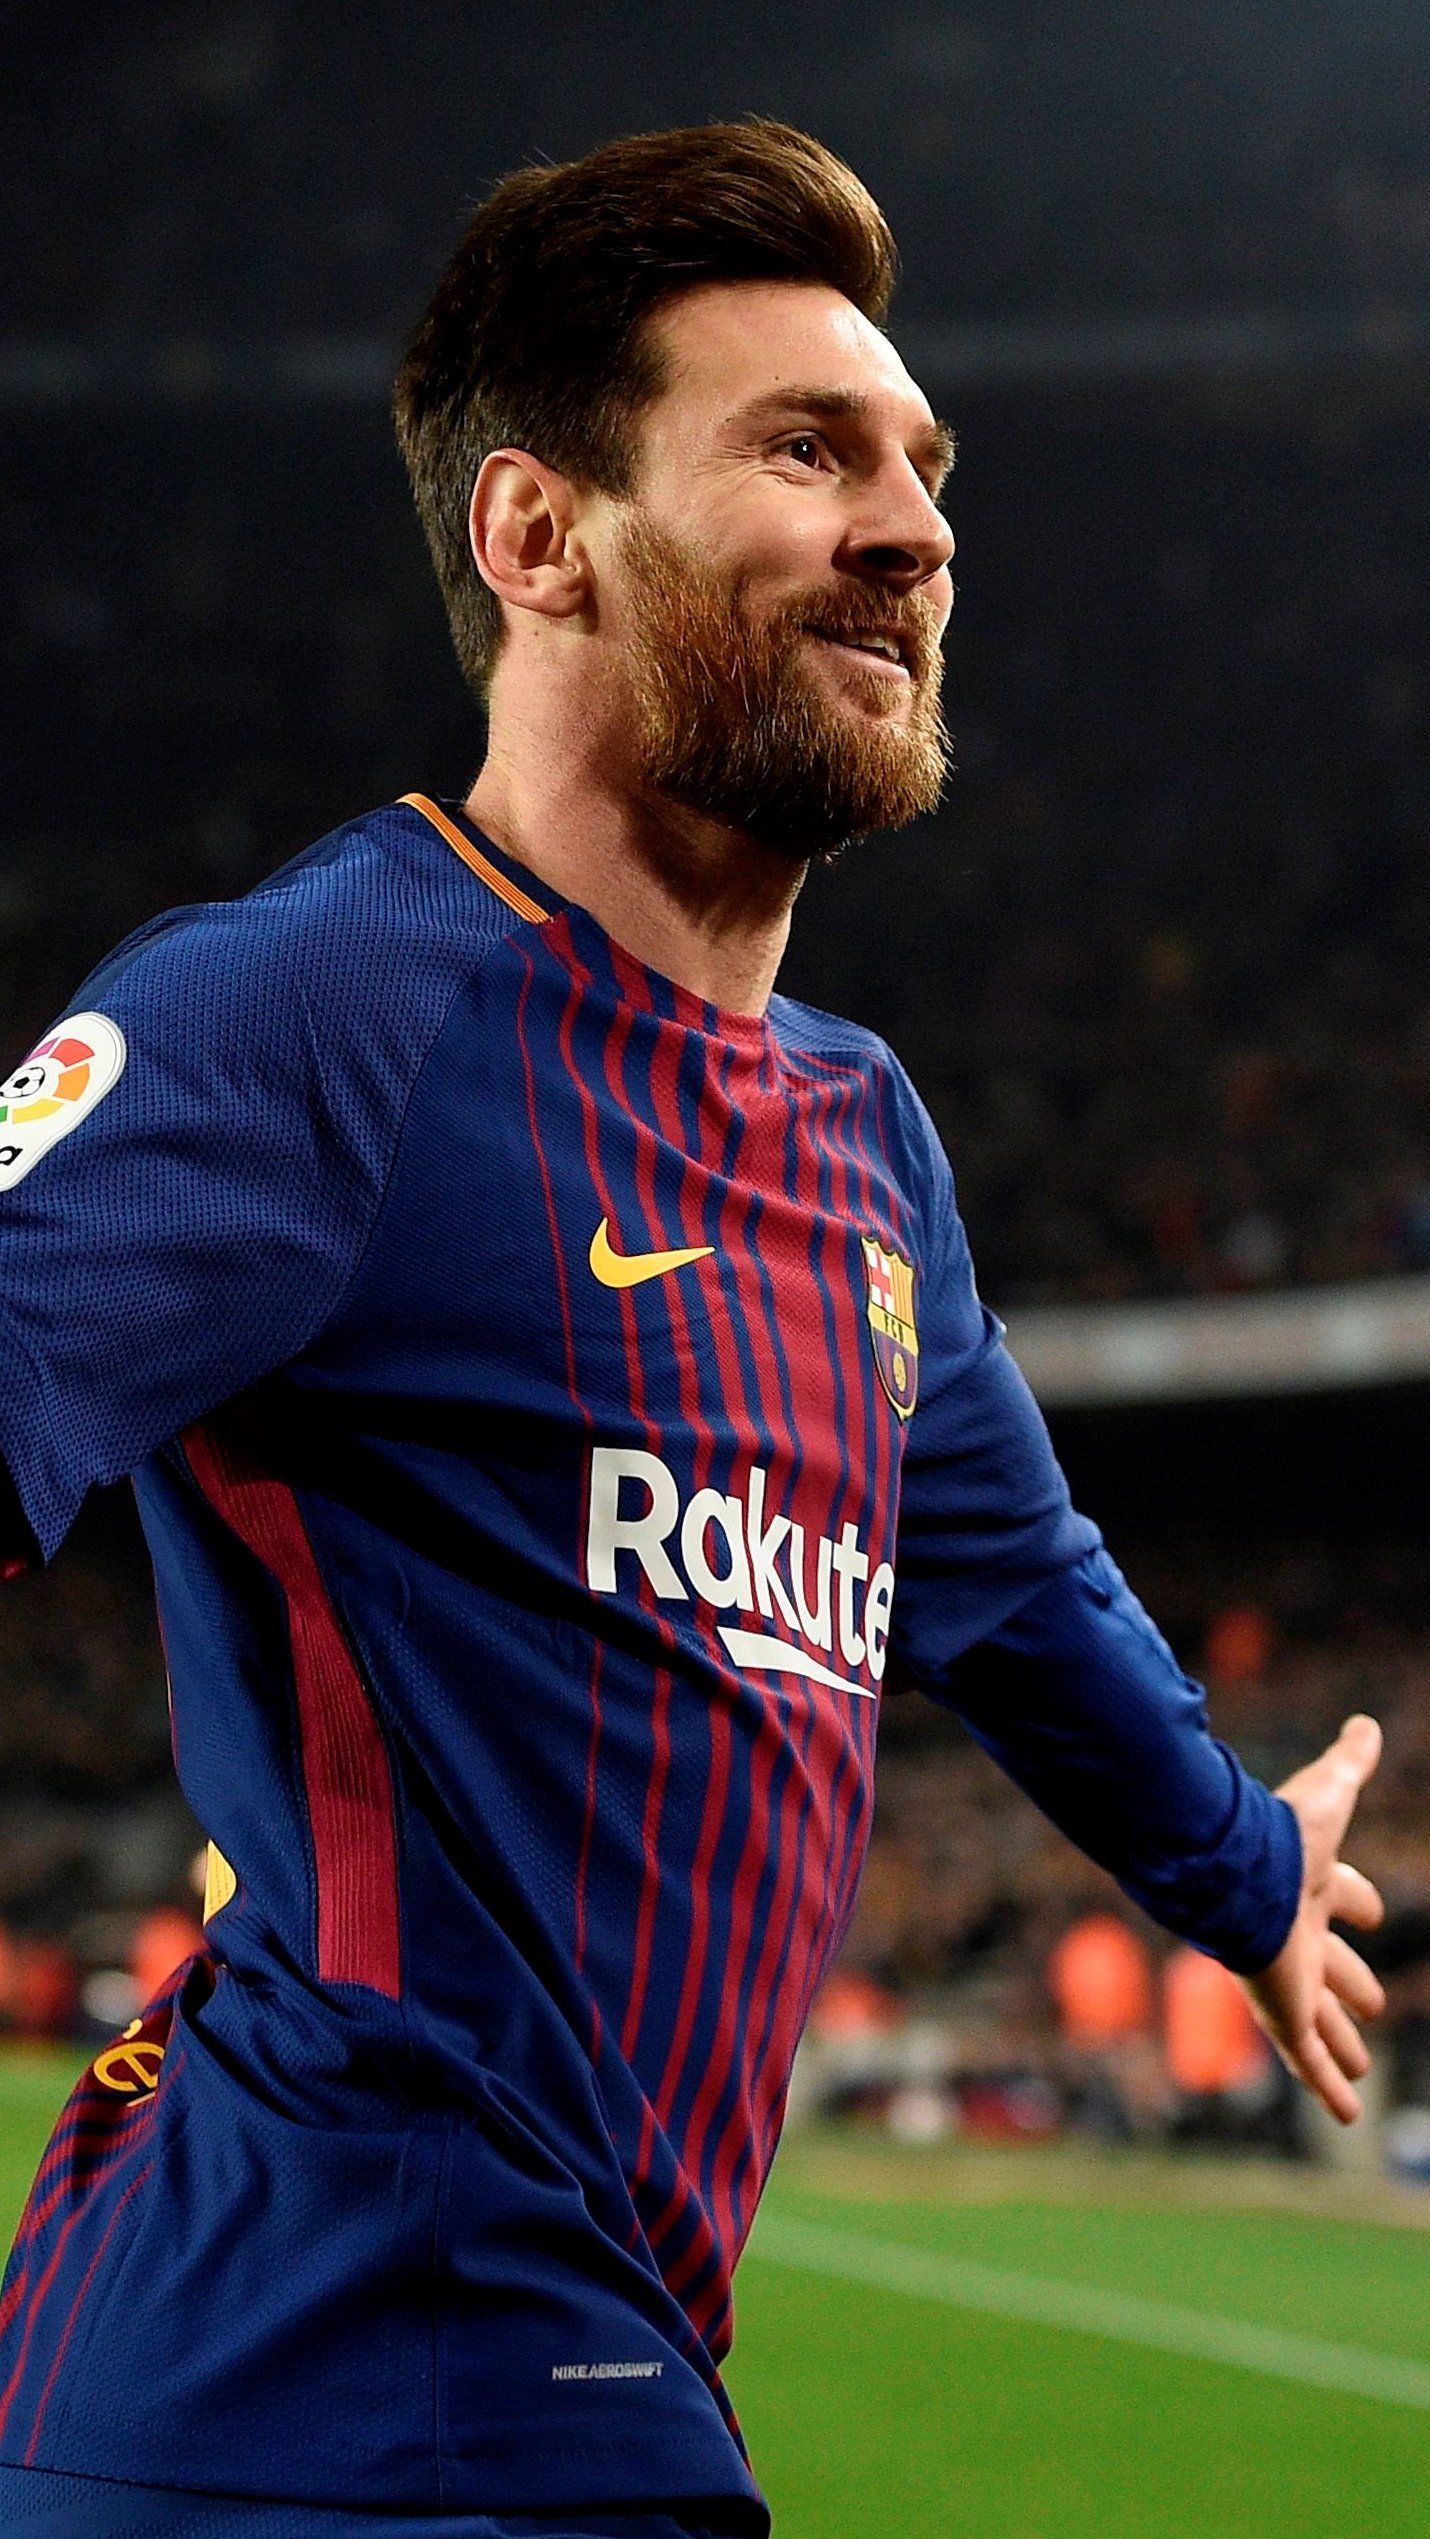 Messi: Mãi mãi là một ngôi sao sáng trong lịch sử bóng đá, Messi chắc chắn là một cái tên bạn không thể bỏ qua. Xem hình ảnh liên quan đến anh để chiêm ngưỡng tài năng thiên bẩm của Messi.